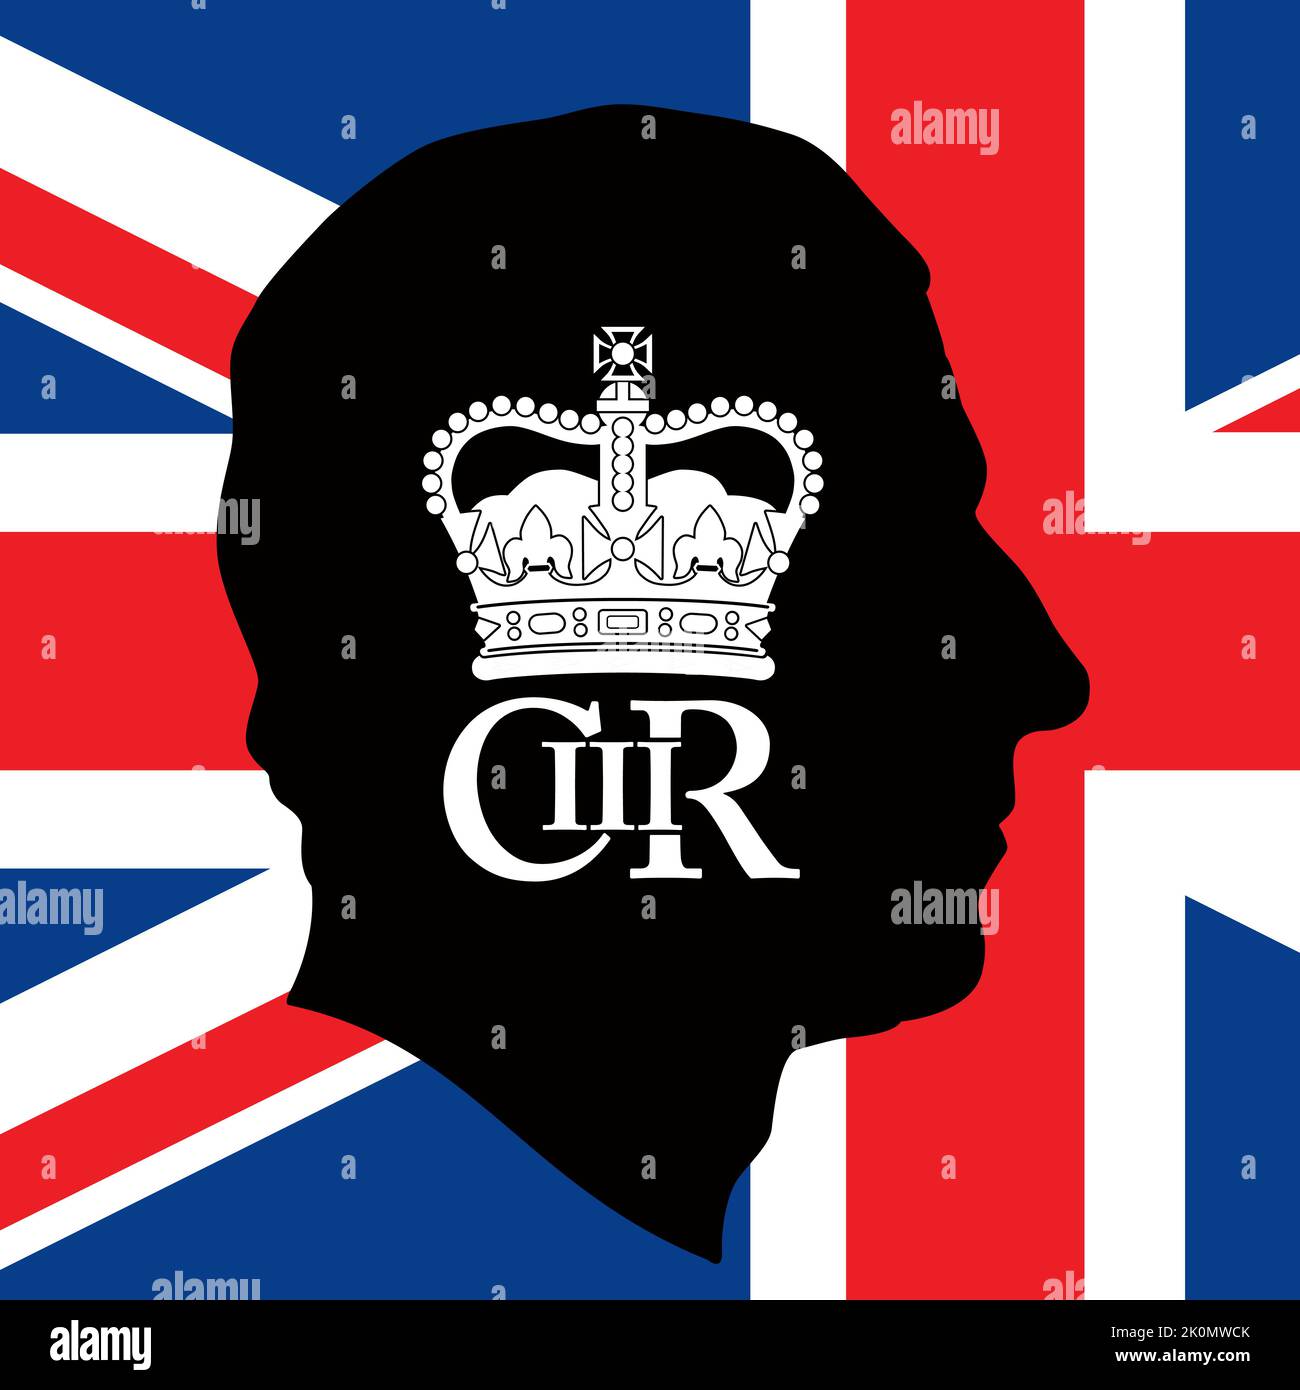 Charles III roi du Royaume-Uni couronnement 2022, silhouette de portrait et monogramme, illustration vectorielle Illustration de Vecteur